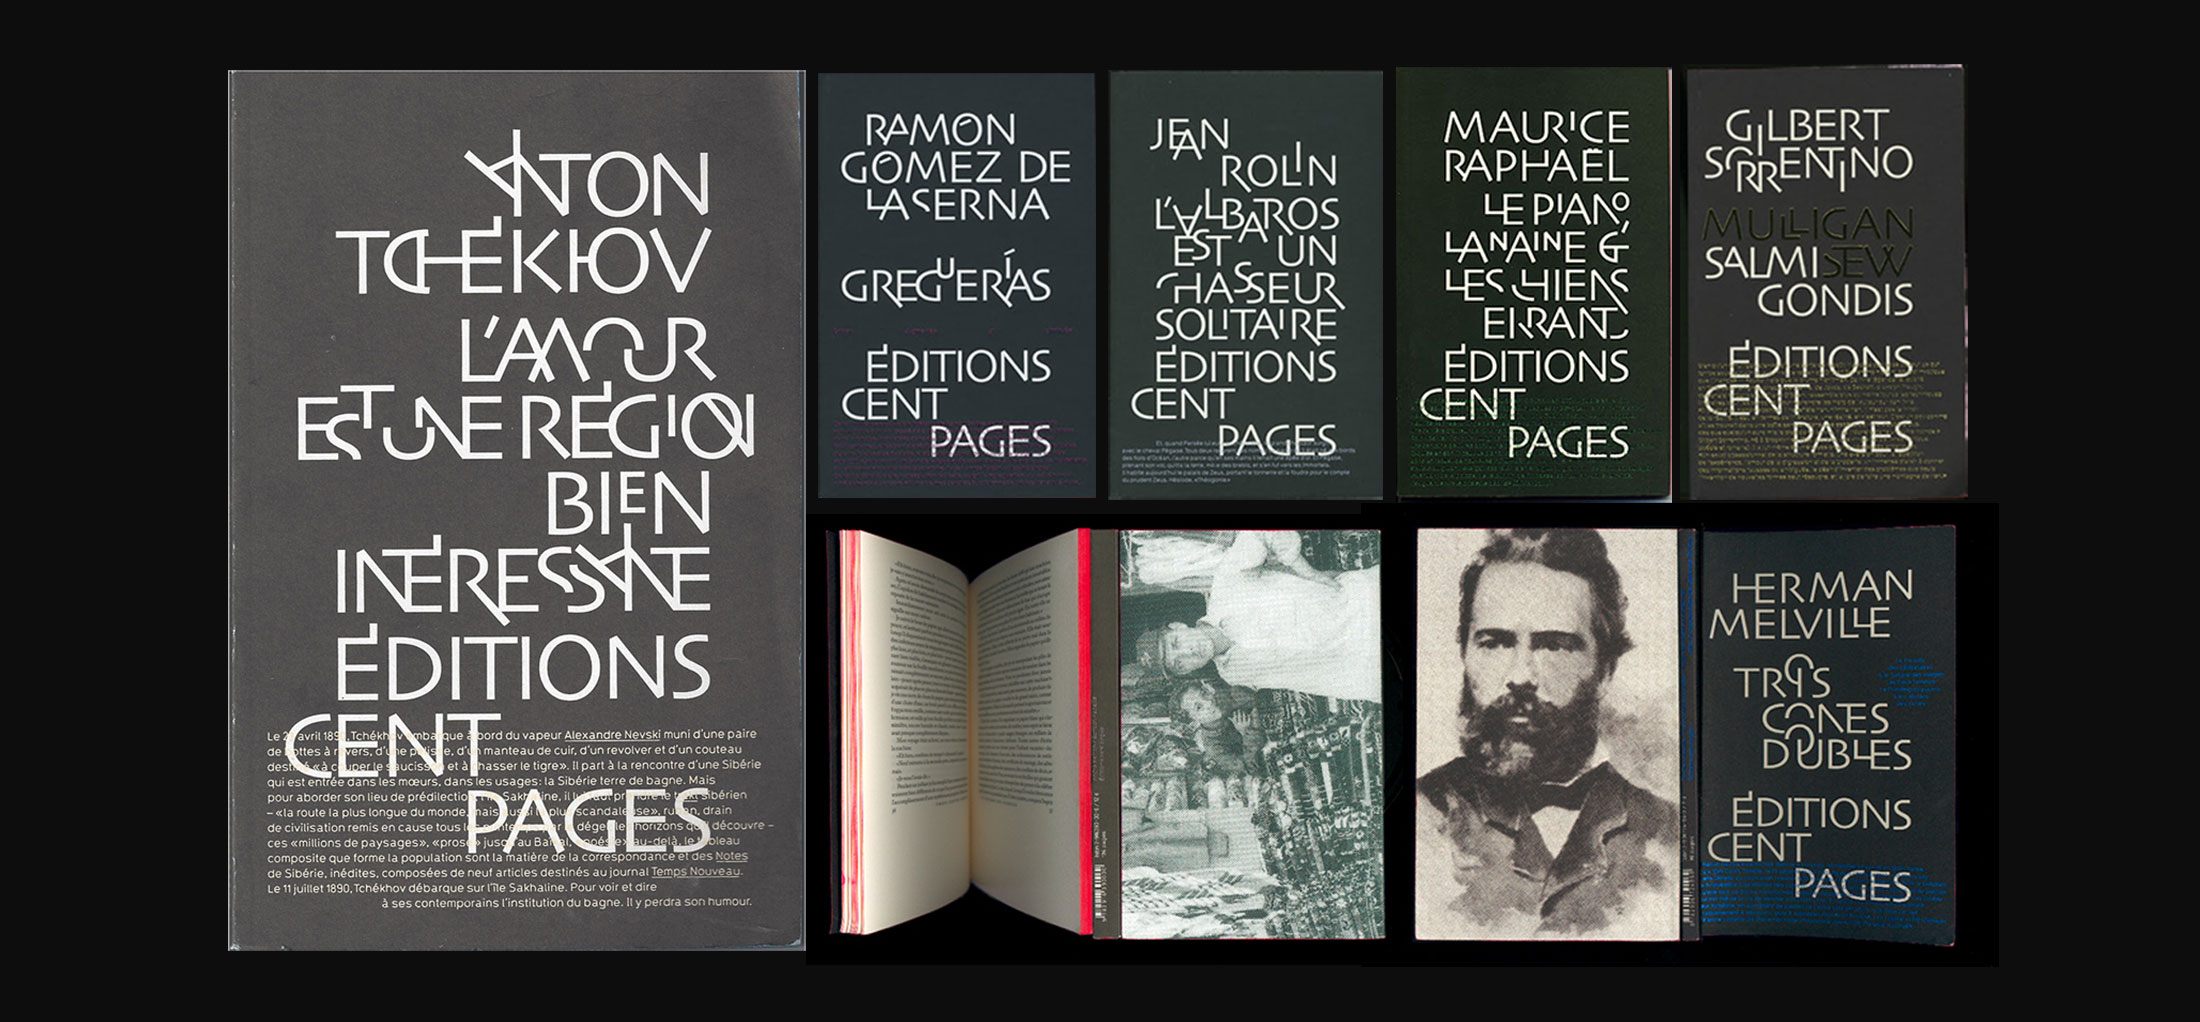 Philippe-Millot-et-des-editions-Cent-pages-couvertures-index-grafik